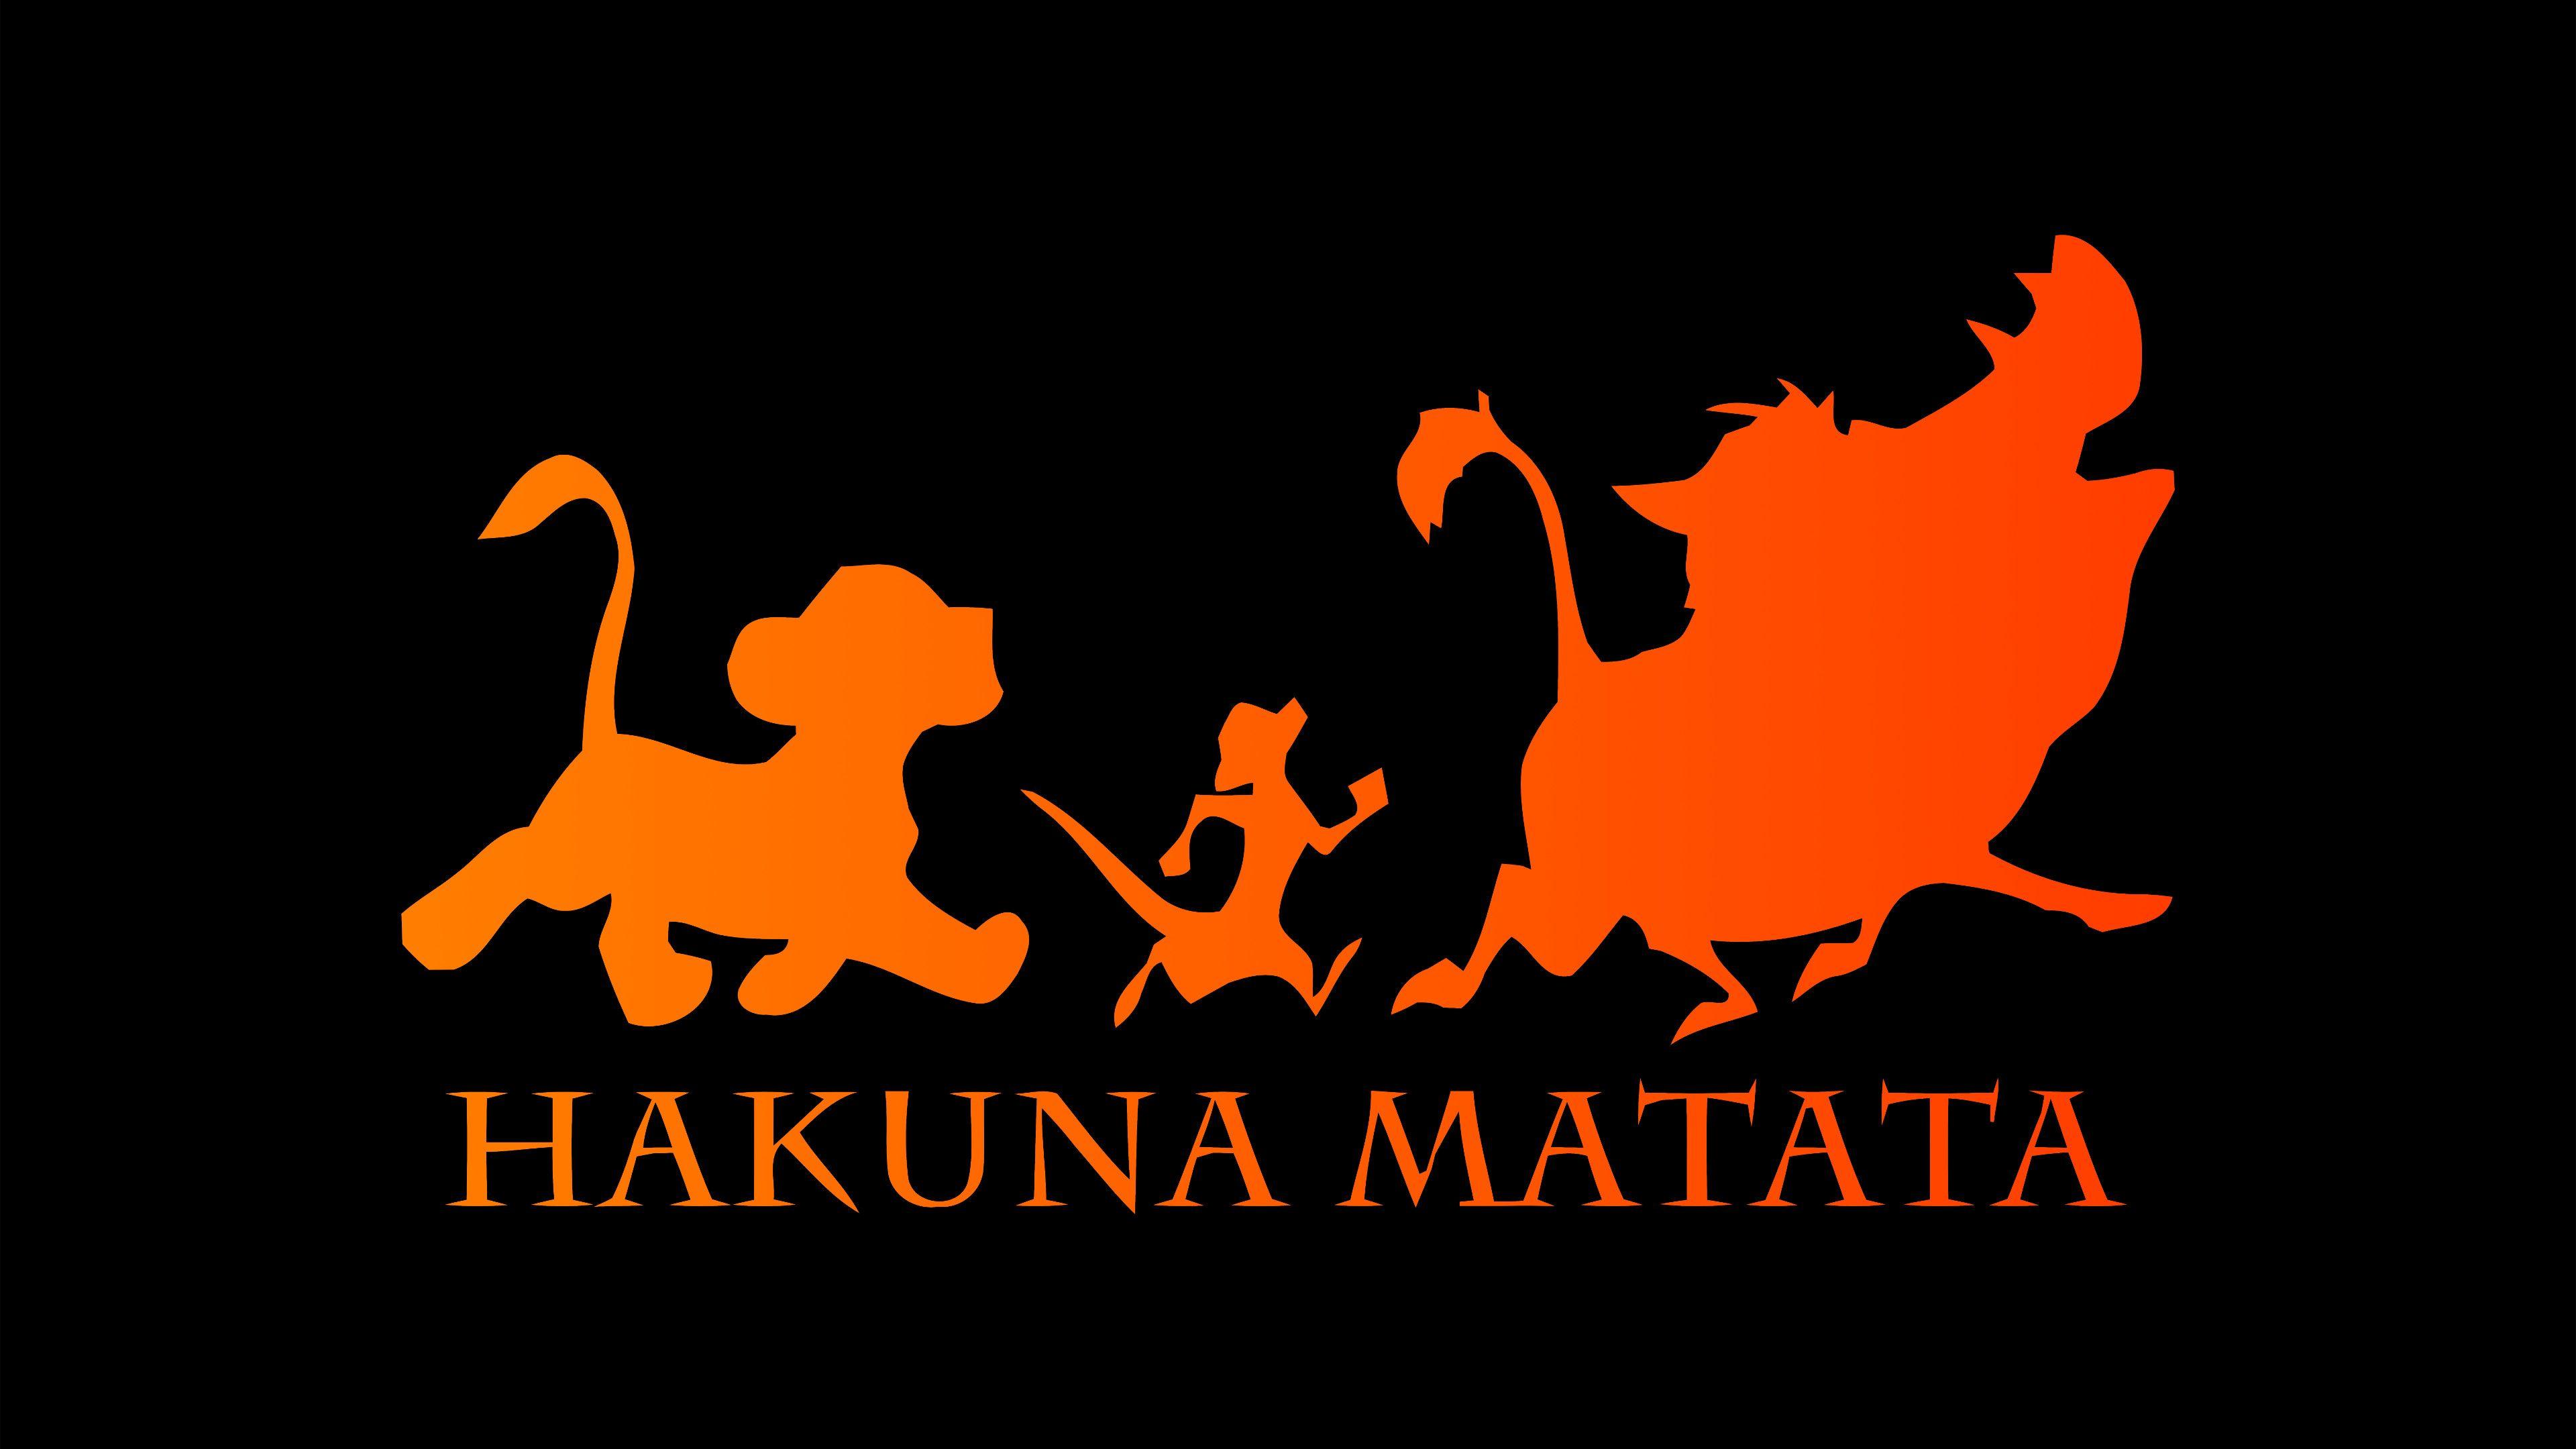 Hakuna Matata Wallpapers - Top Free Hakuna Matata Backgrounds